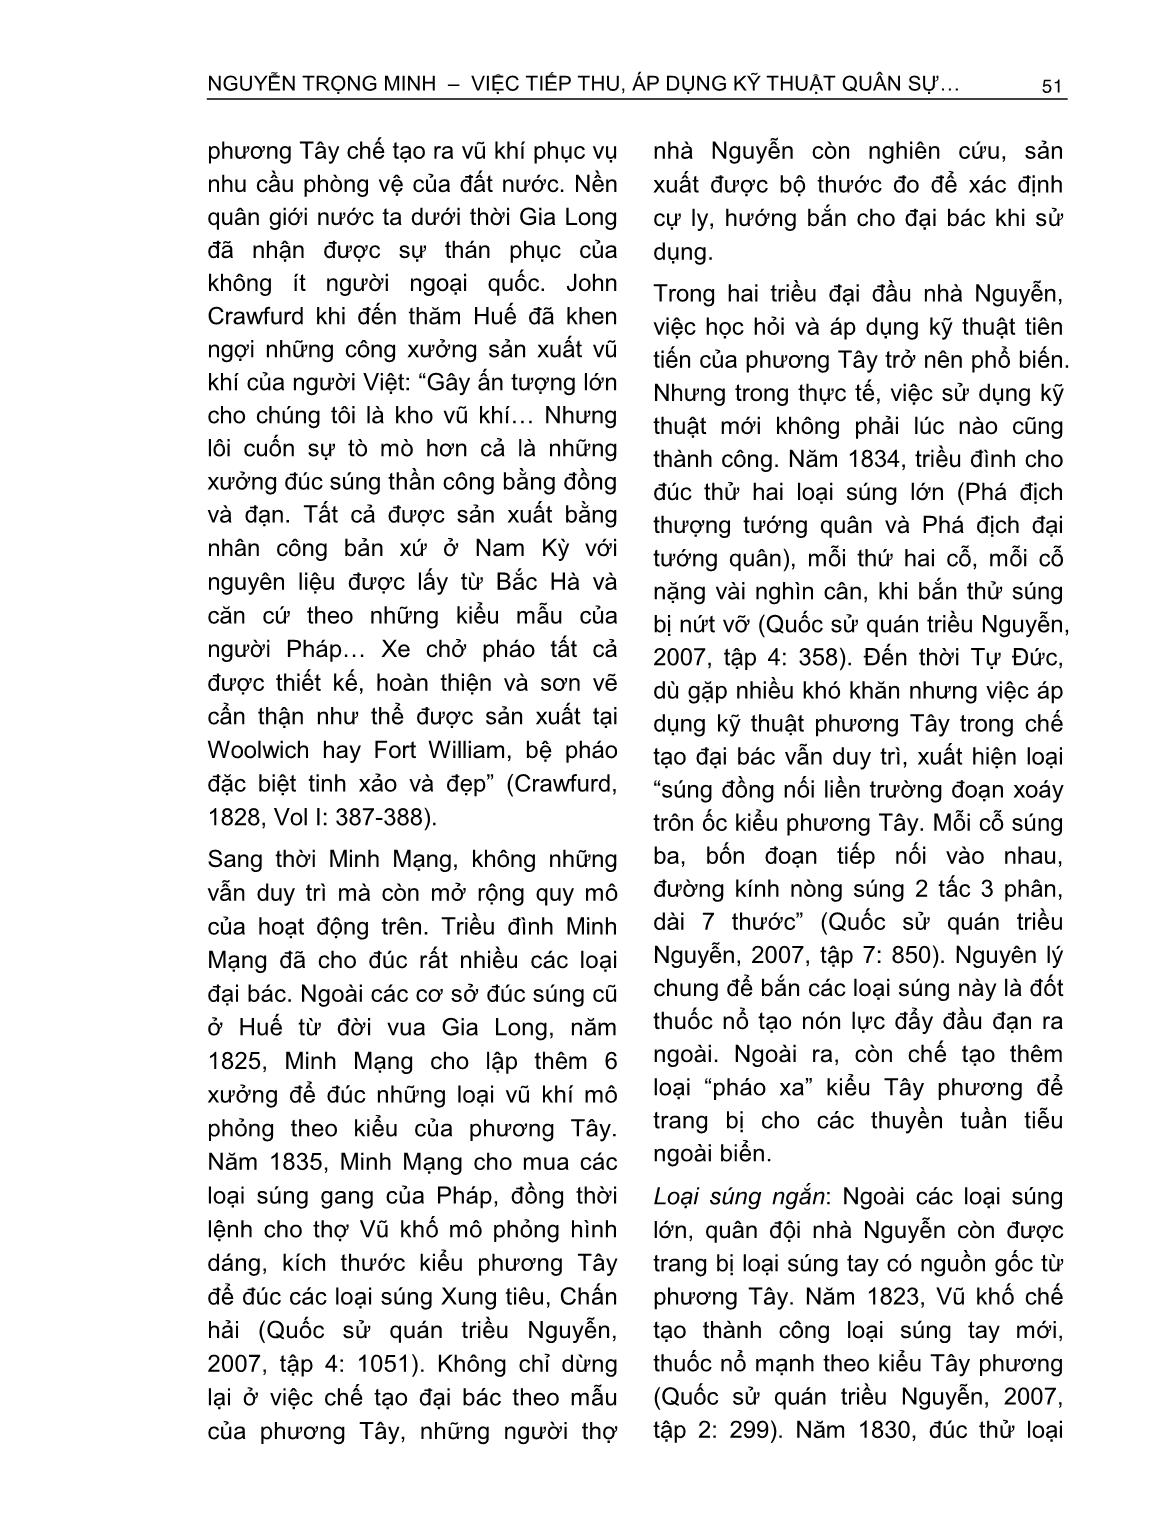 Việc tiếp thu, áp dụng kỹ thuật quân sự phương Tây của triều Nguyễn (1802-1858) trang 2